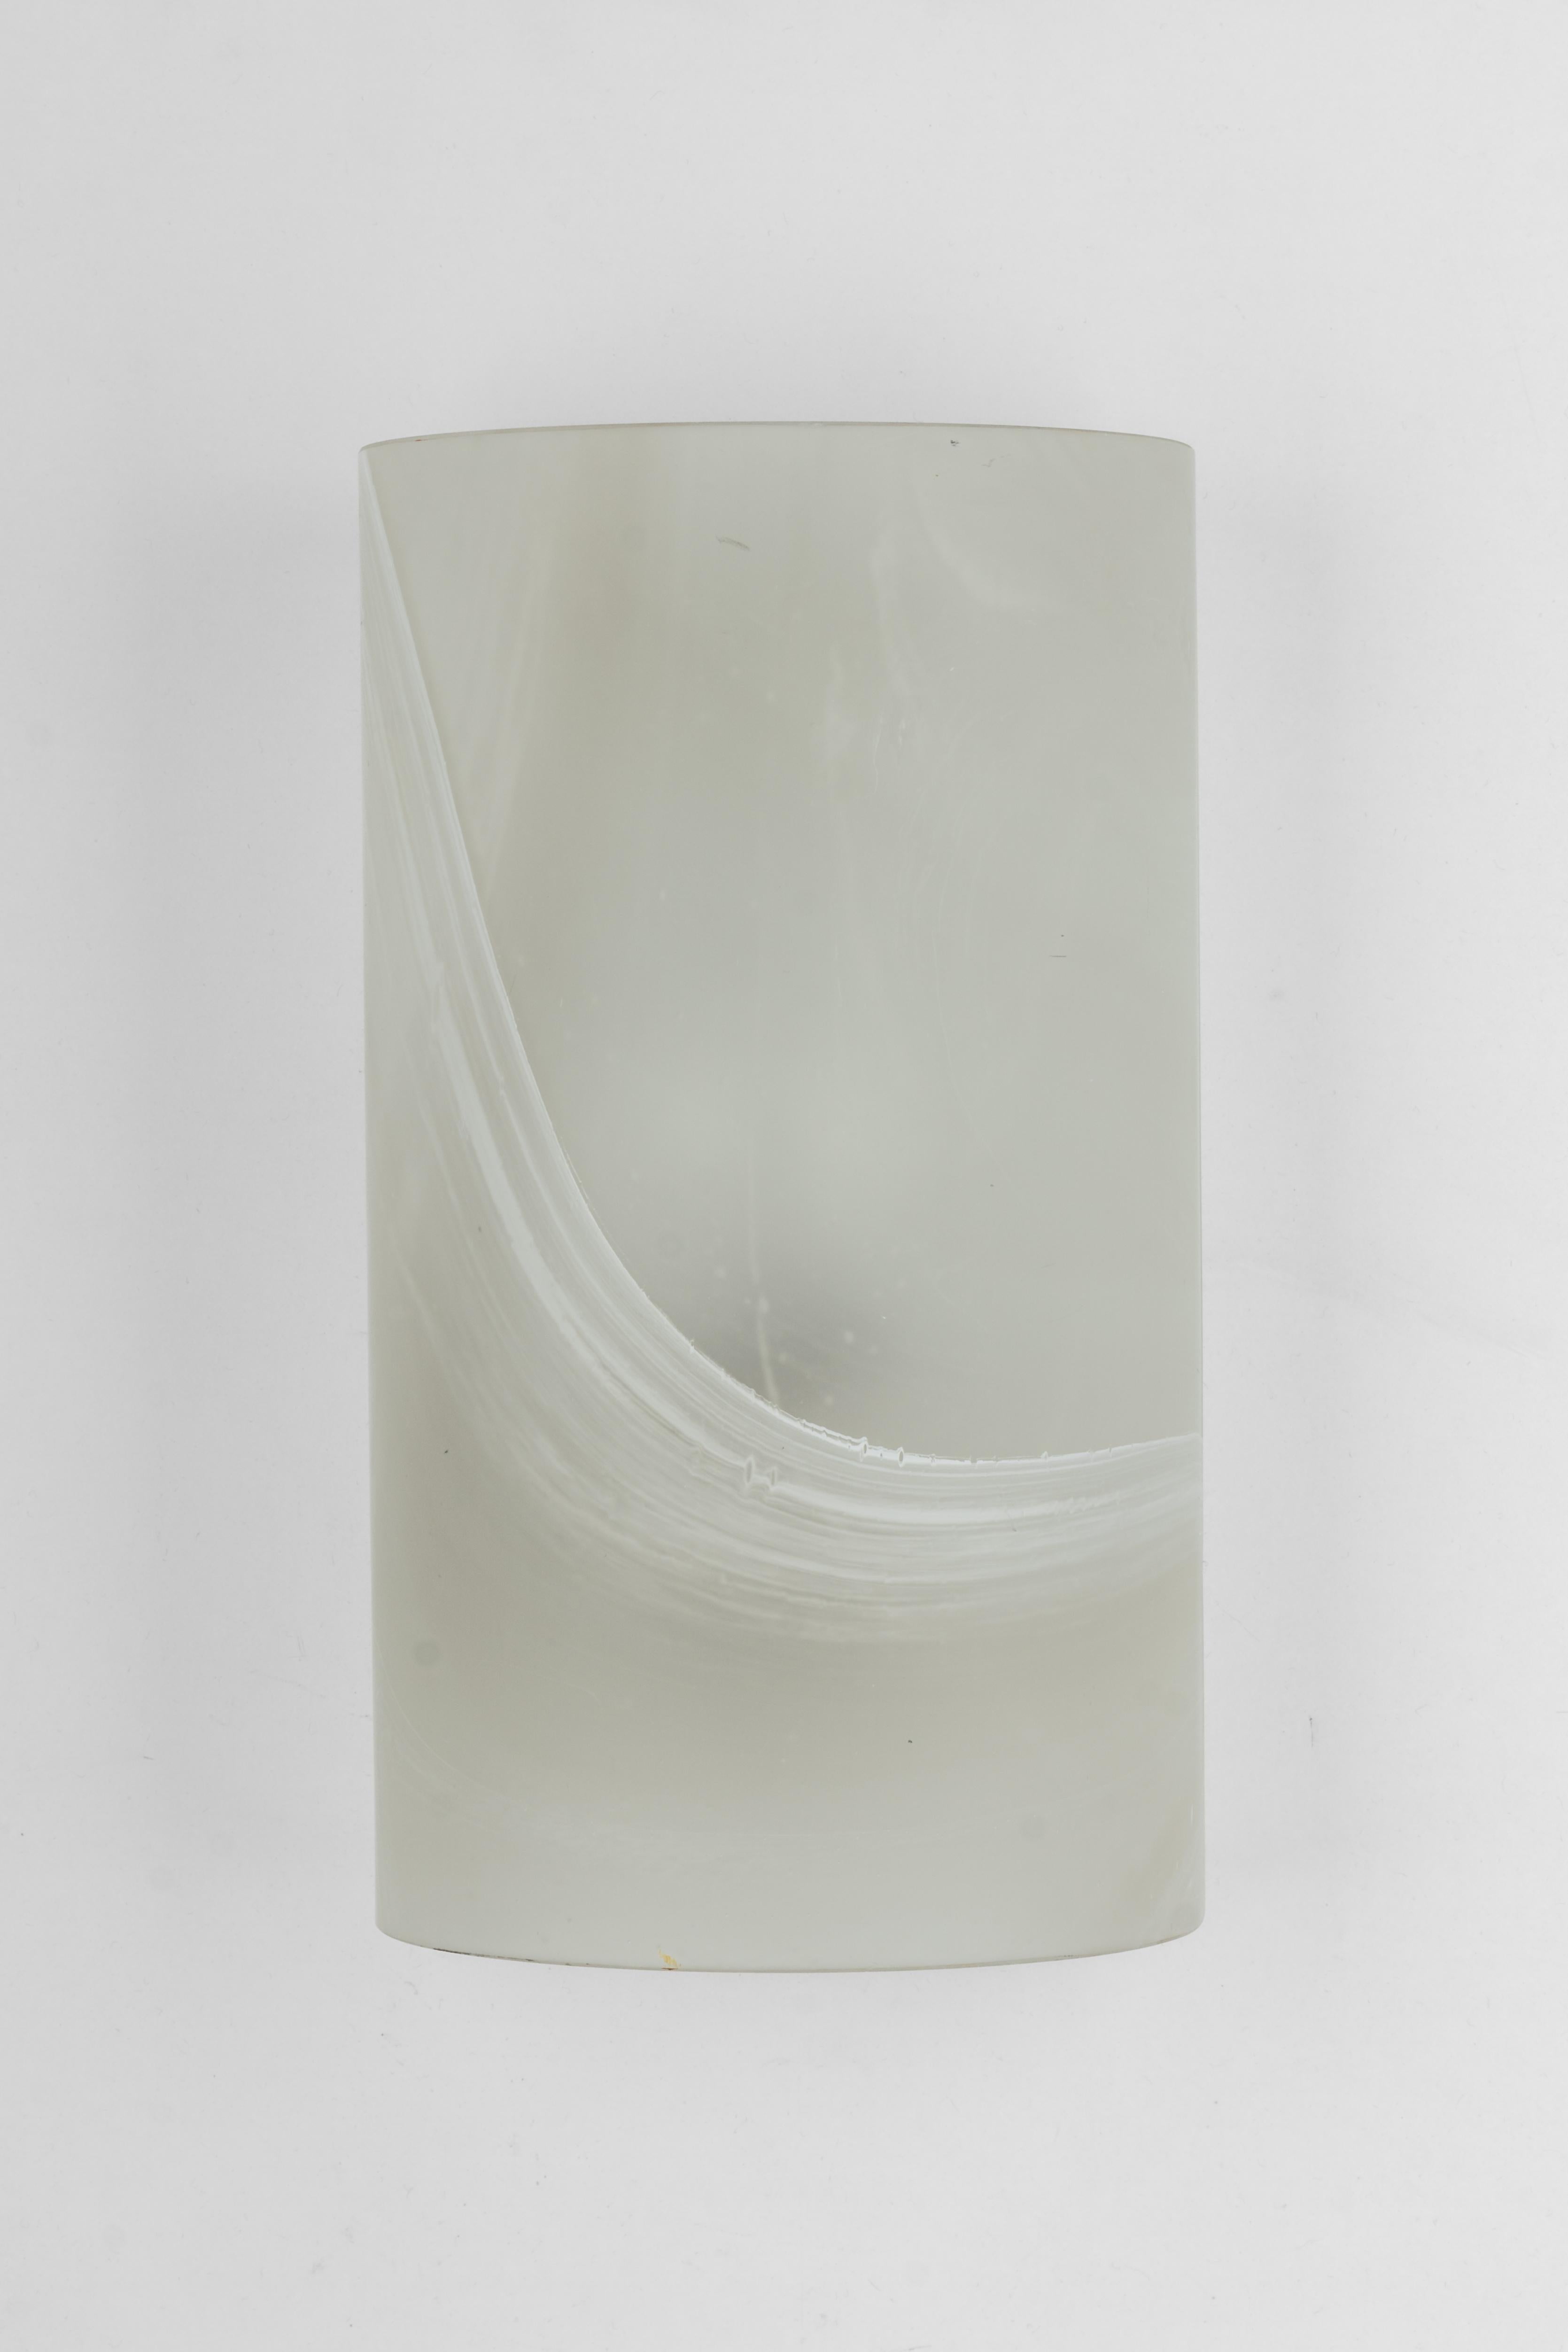 Paar Wandleuchter aus Glas mit weißem Rahmen von Peil & Putzler, Deutschland, 1970er Jahre
Wunderbarer Lichteffekt.
Hochwertig und in sehr gutem Zustand. Gereinigt, gut verkabelt und einsatzbereit. 

Jede Leuchte benötigt 1 x E27 Standard